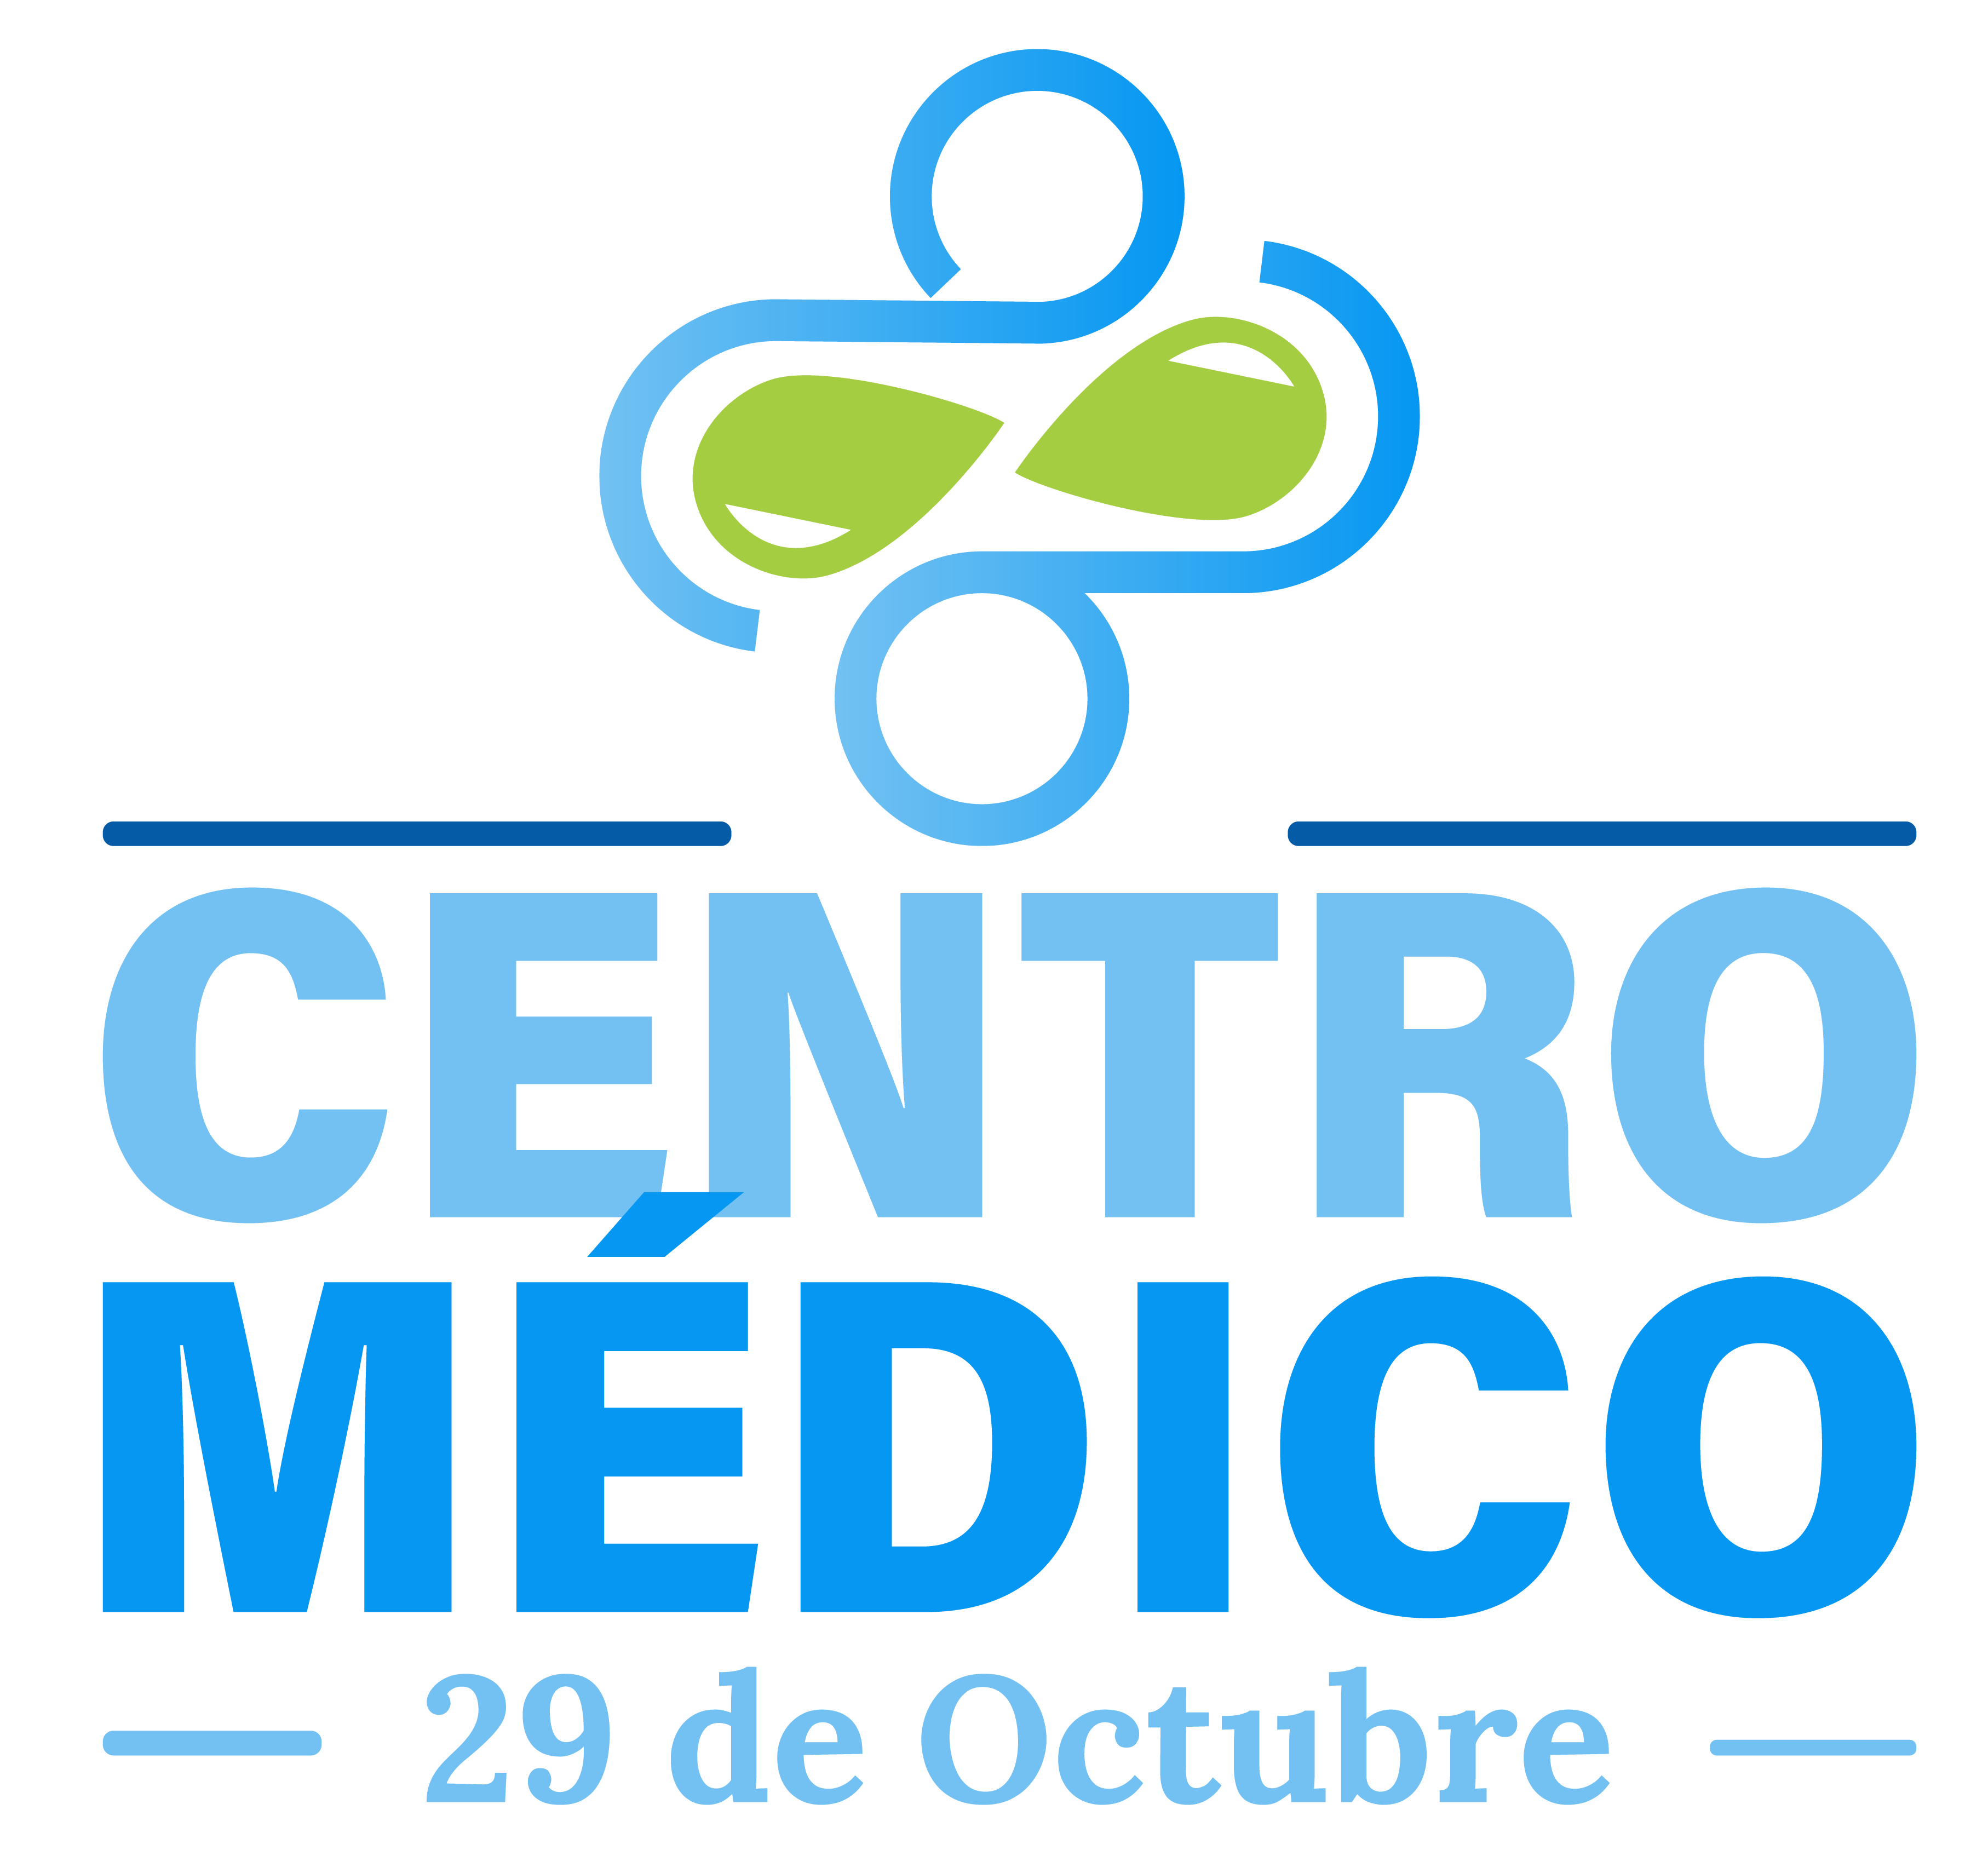 Centro Medico 29 de Octubre